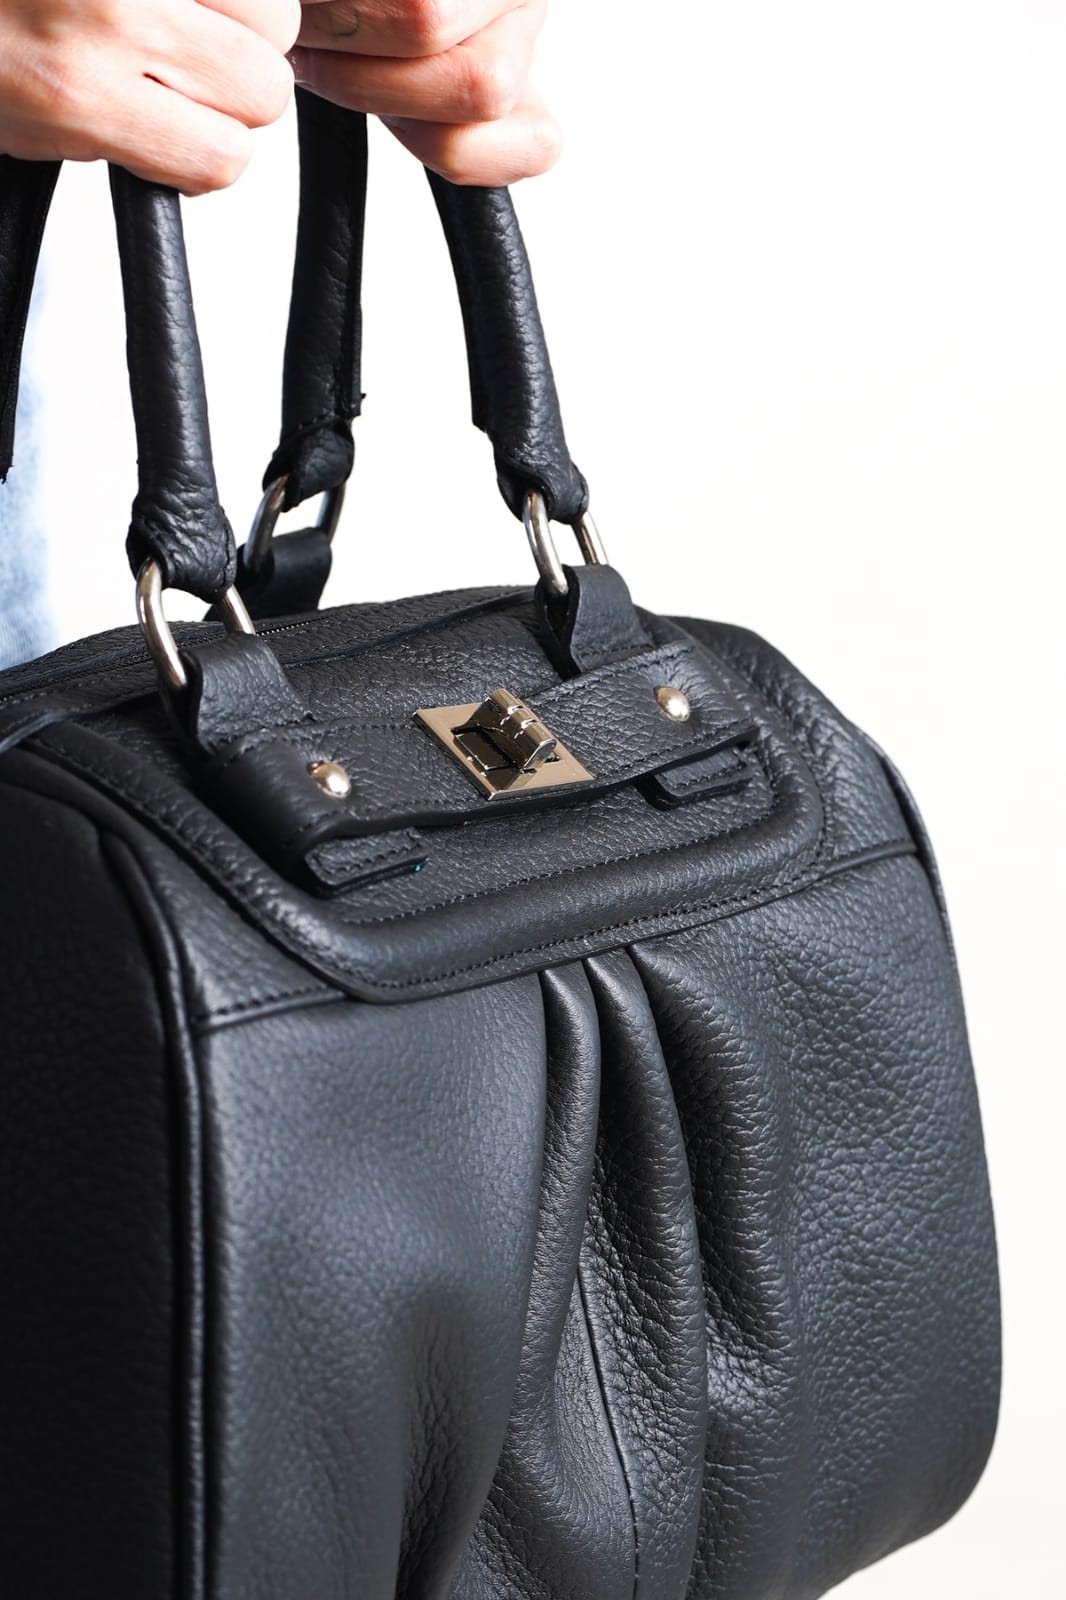 Kadın Hakiki Deri El Çantası Bavul Model - Siyah